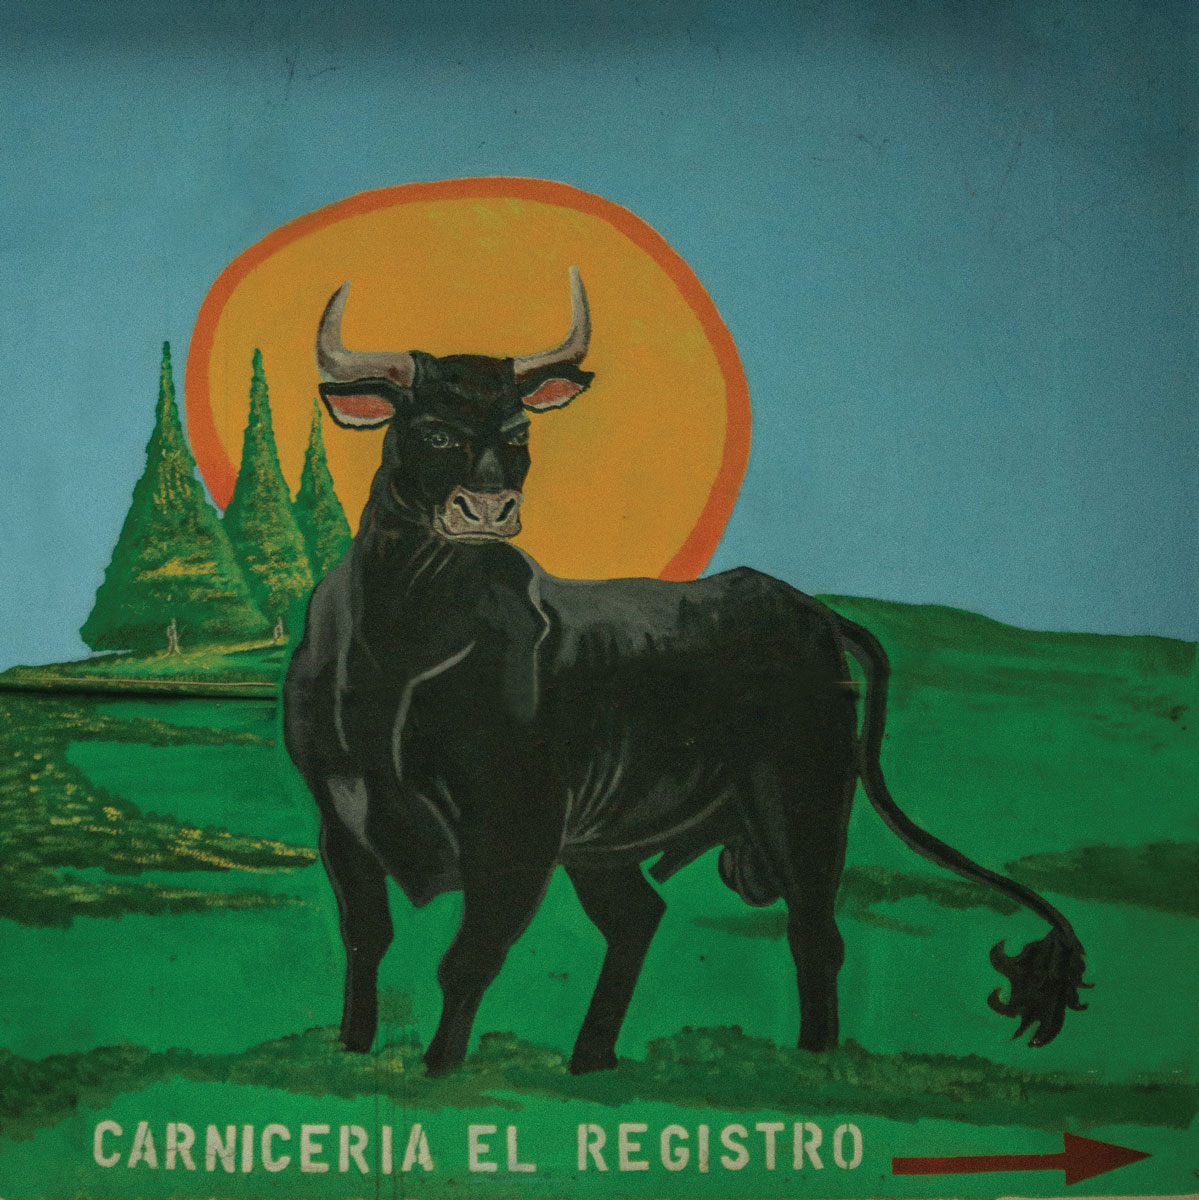 Bull Fighting sign "Carniceria el Registro"